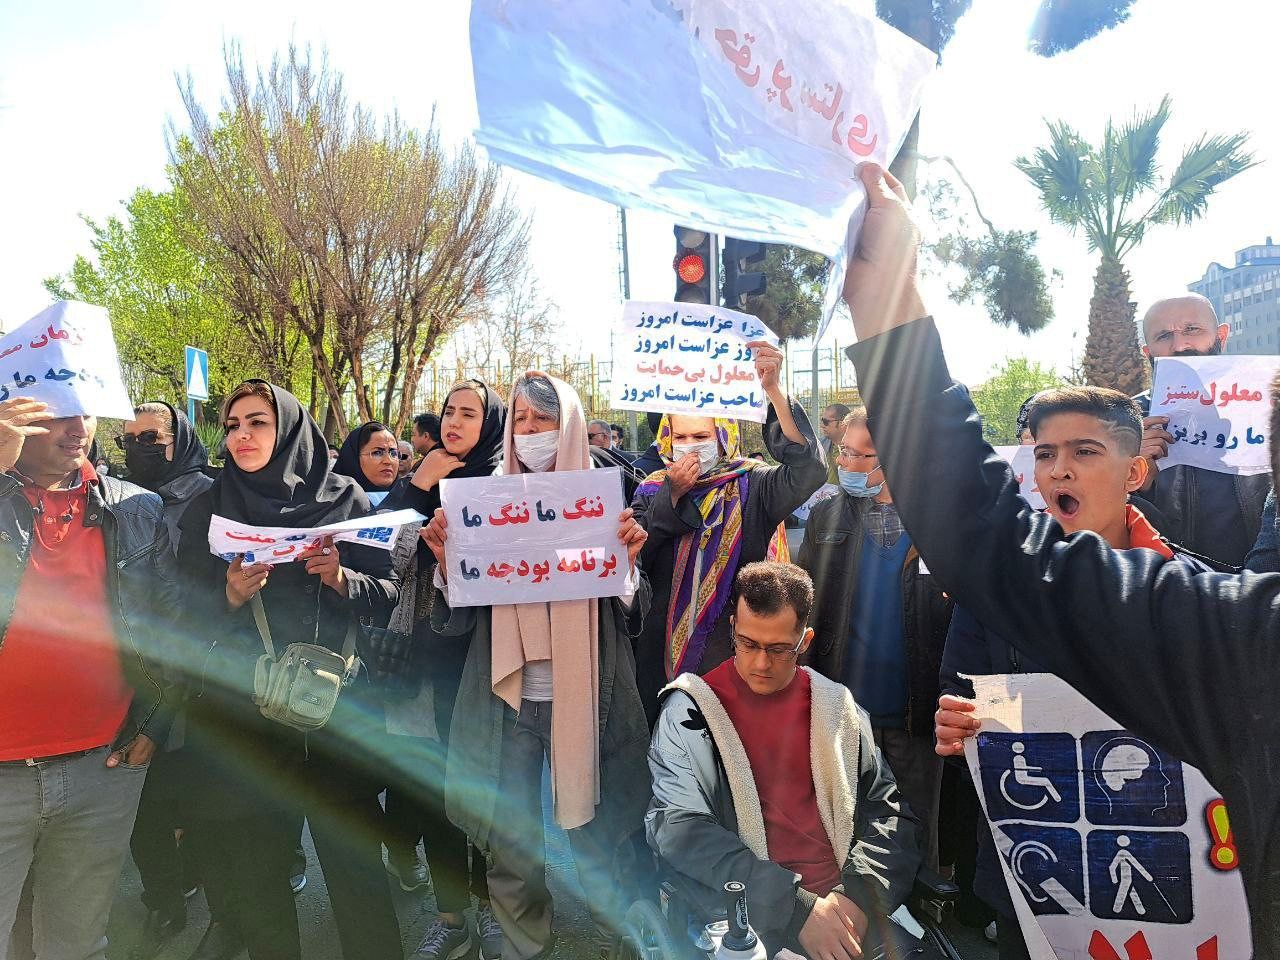 تحصن اعتراضی در خیابان بهارستان تهران/ ماجرا چه بود؟+ تصاویر